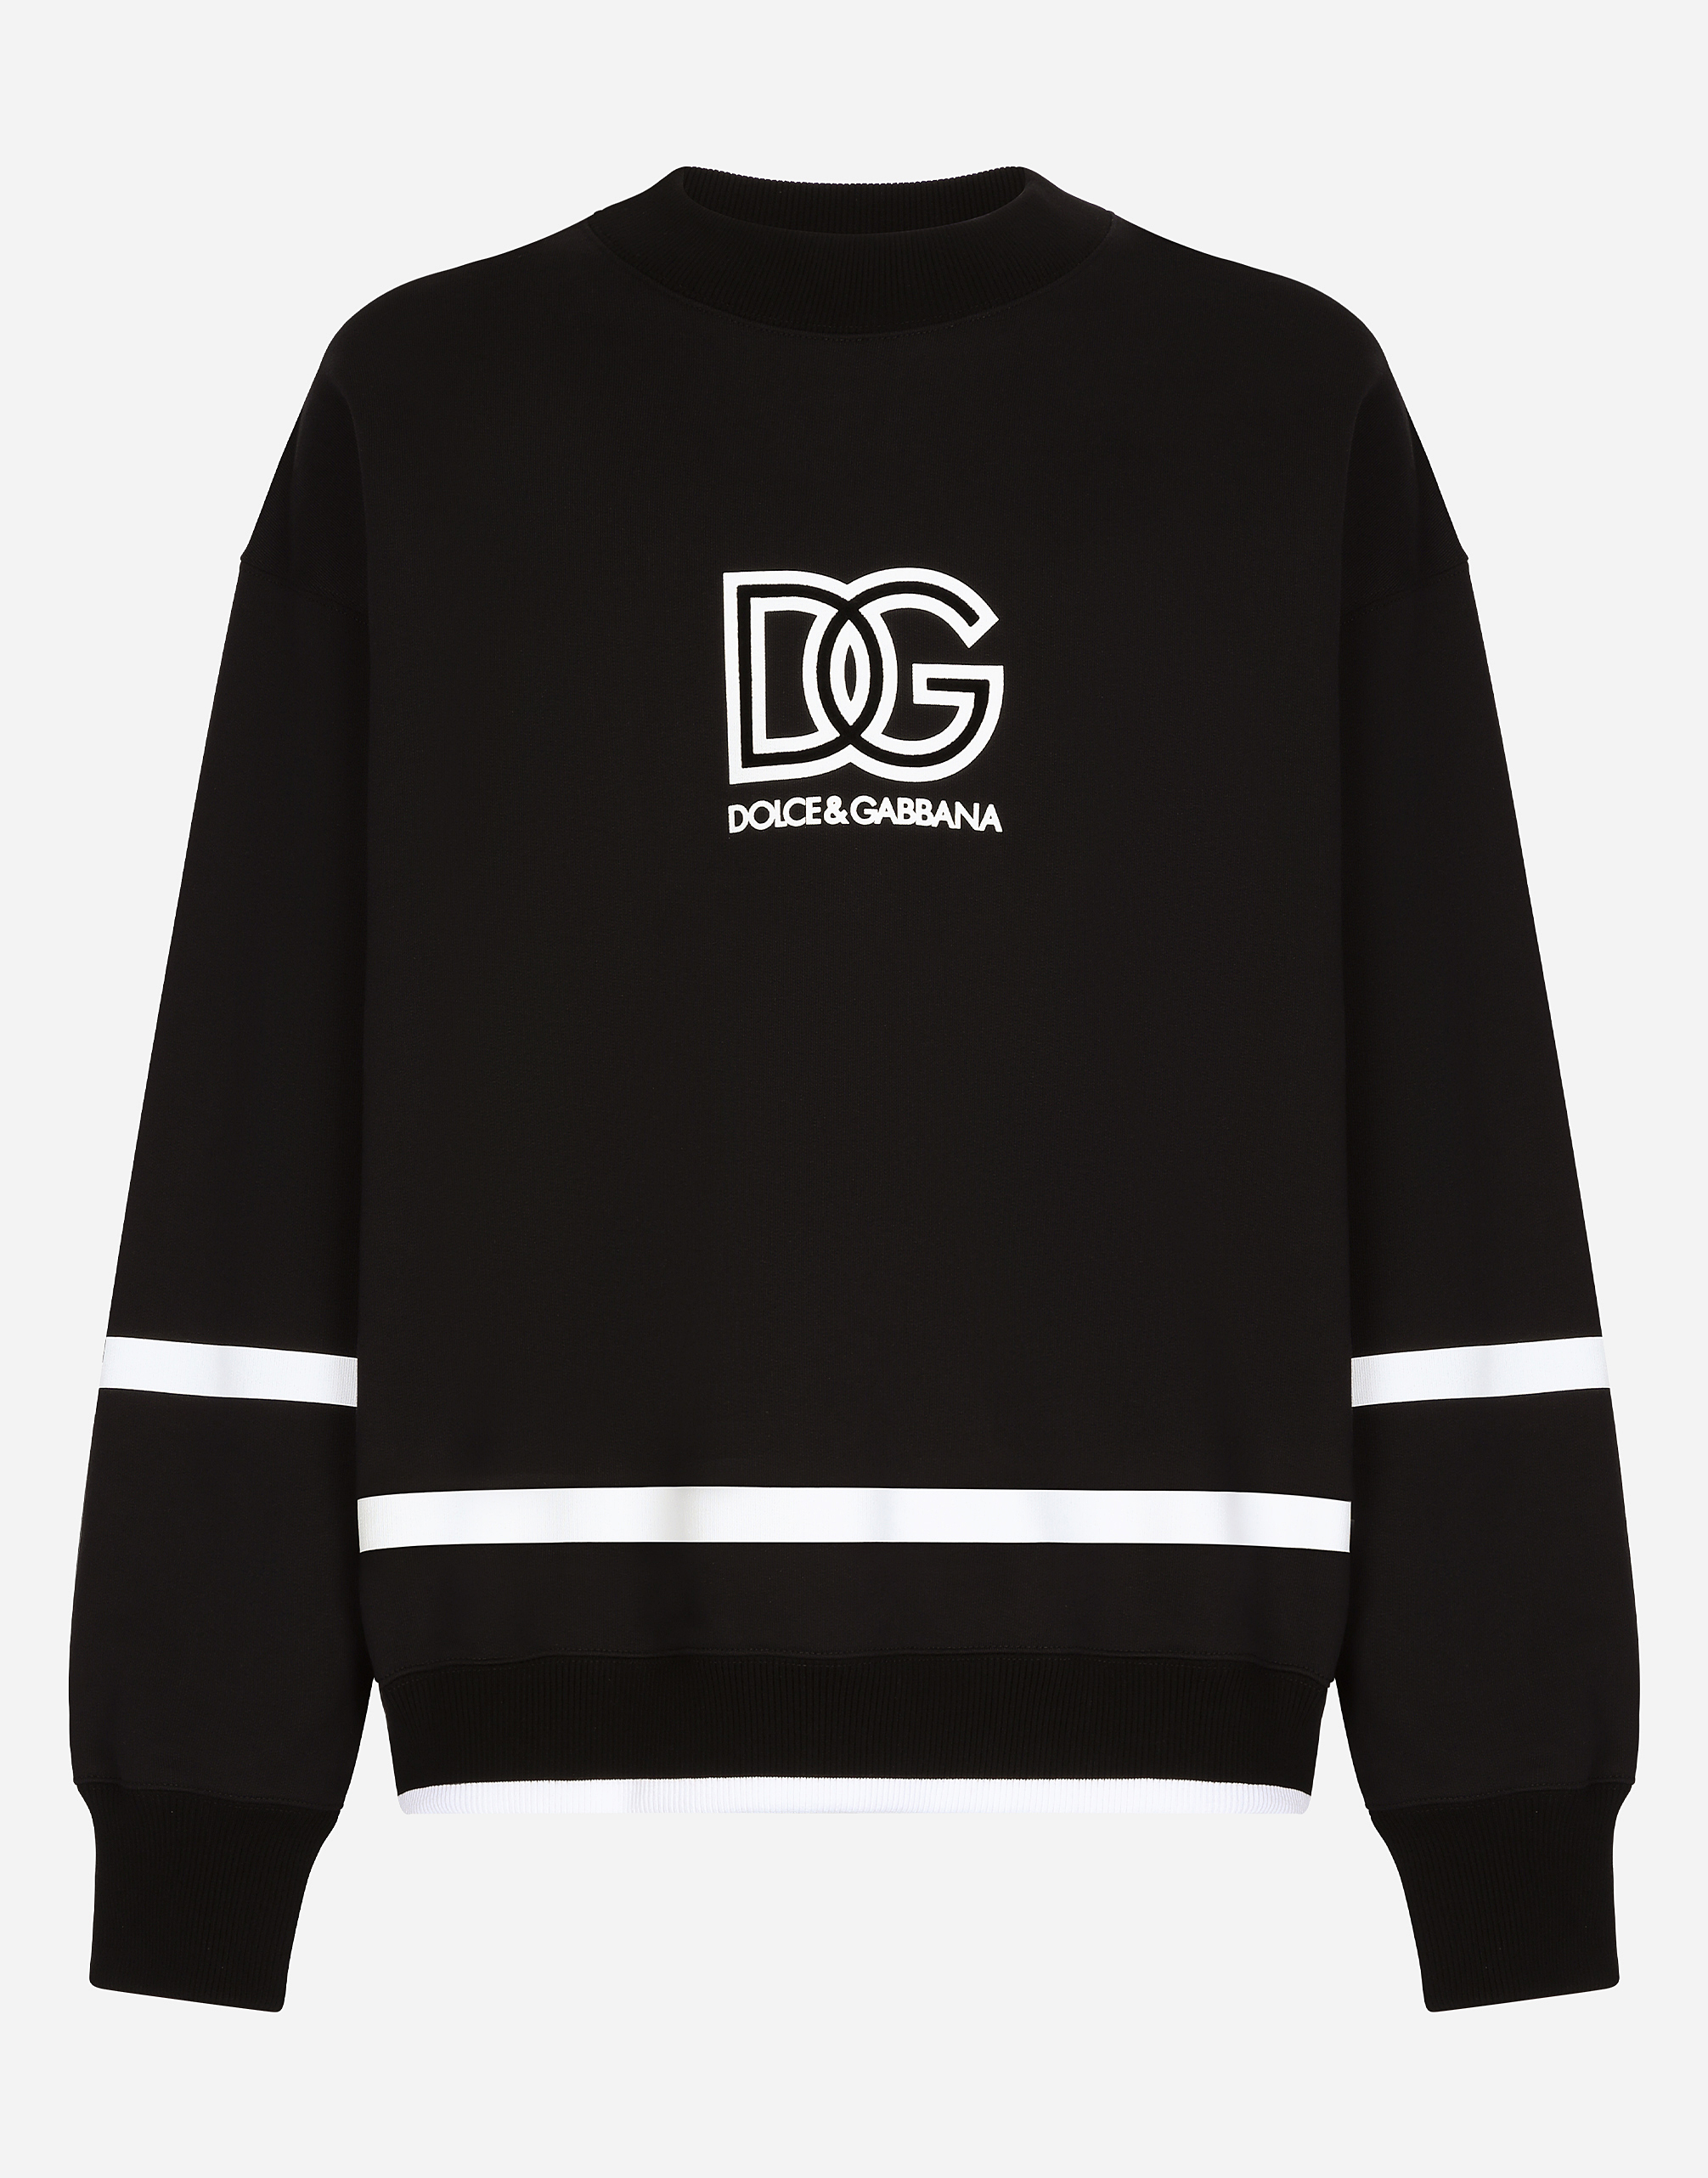 Dolce & Gabbana Round-neck Sweatshirt With Dg Logo In Black